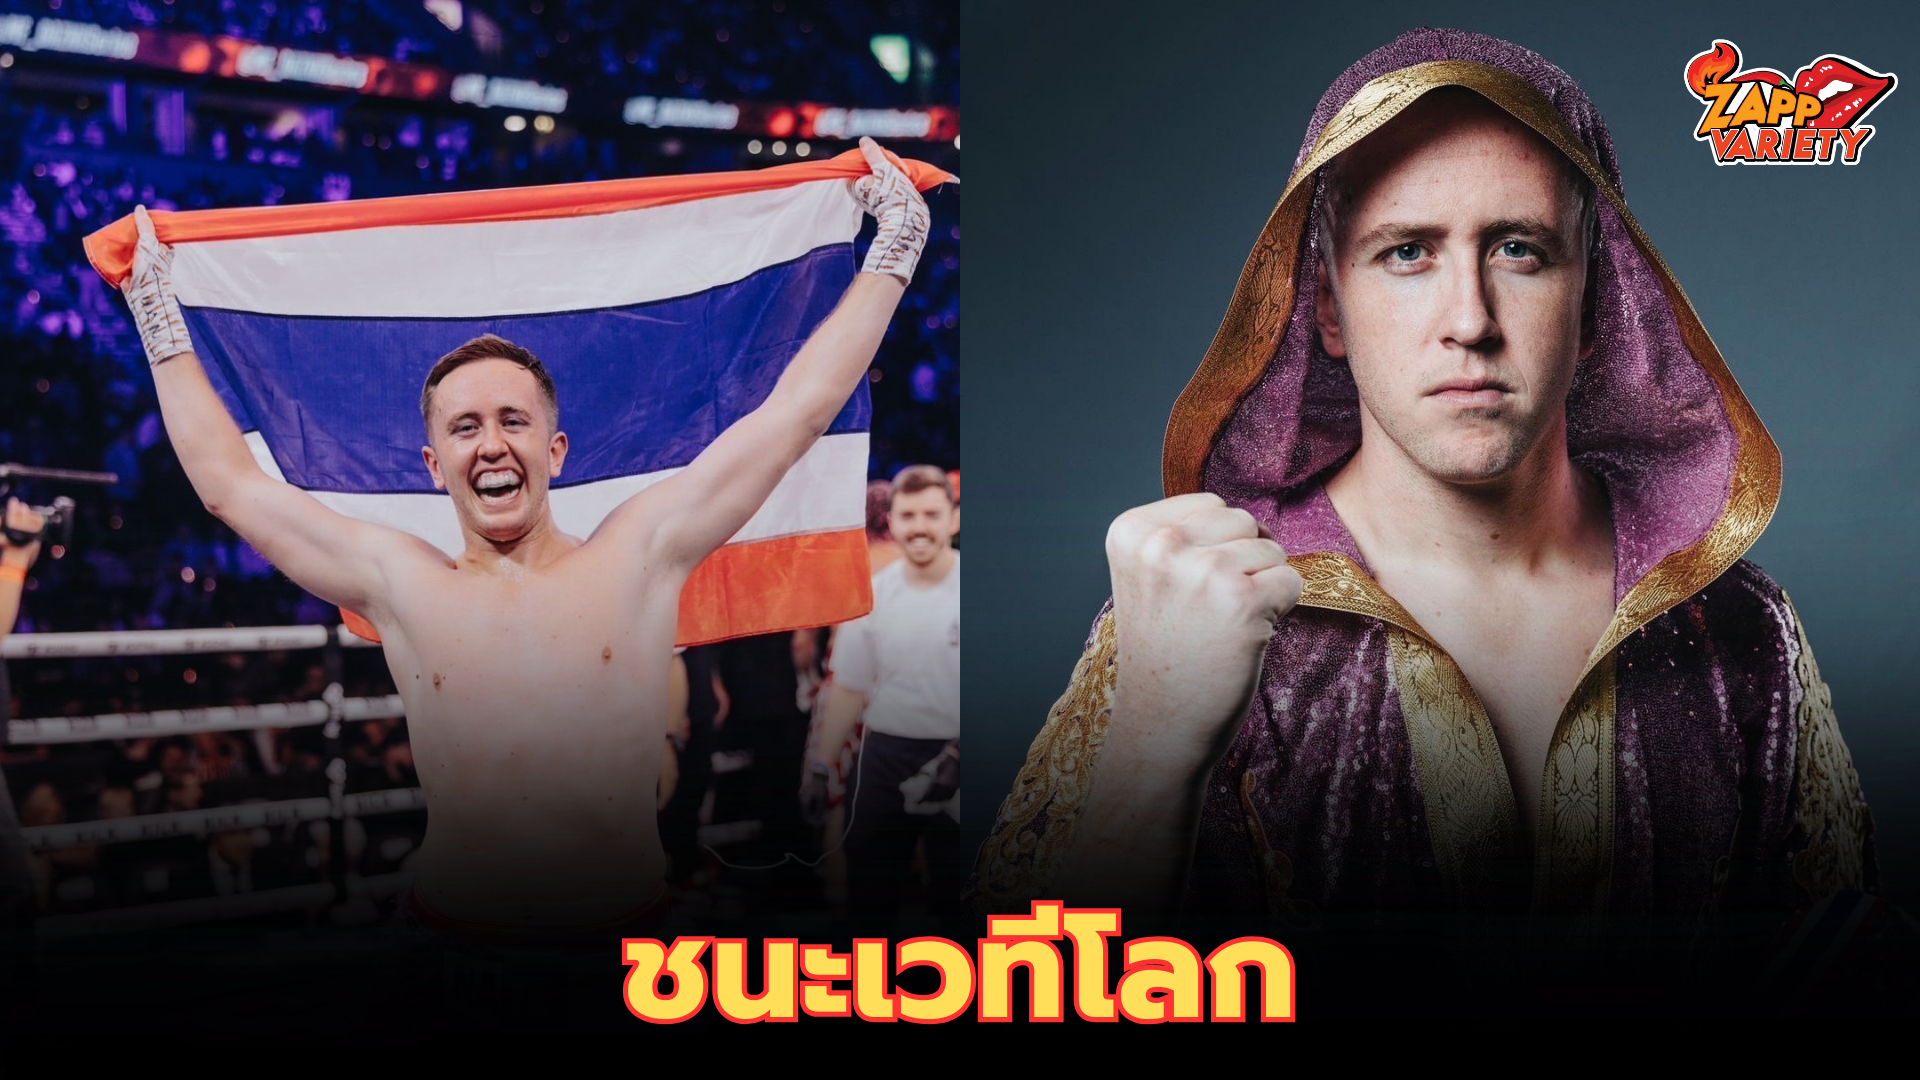 ประกาศศักดาให้ประเทศไทยกึกก้องไปทั่วโลก “เนท My Mate Nate” ในฐานะตัวแทนชาวไทย   ได้คว้าชัยชนะเวทีระดับโลก ในรายการ influencer boxing ที่ประเทศอังกฤษมาได้อย่างสวยงาม